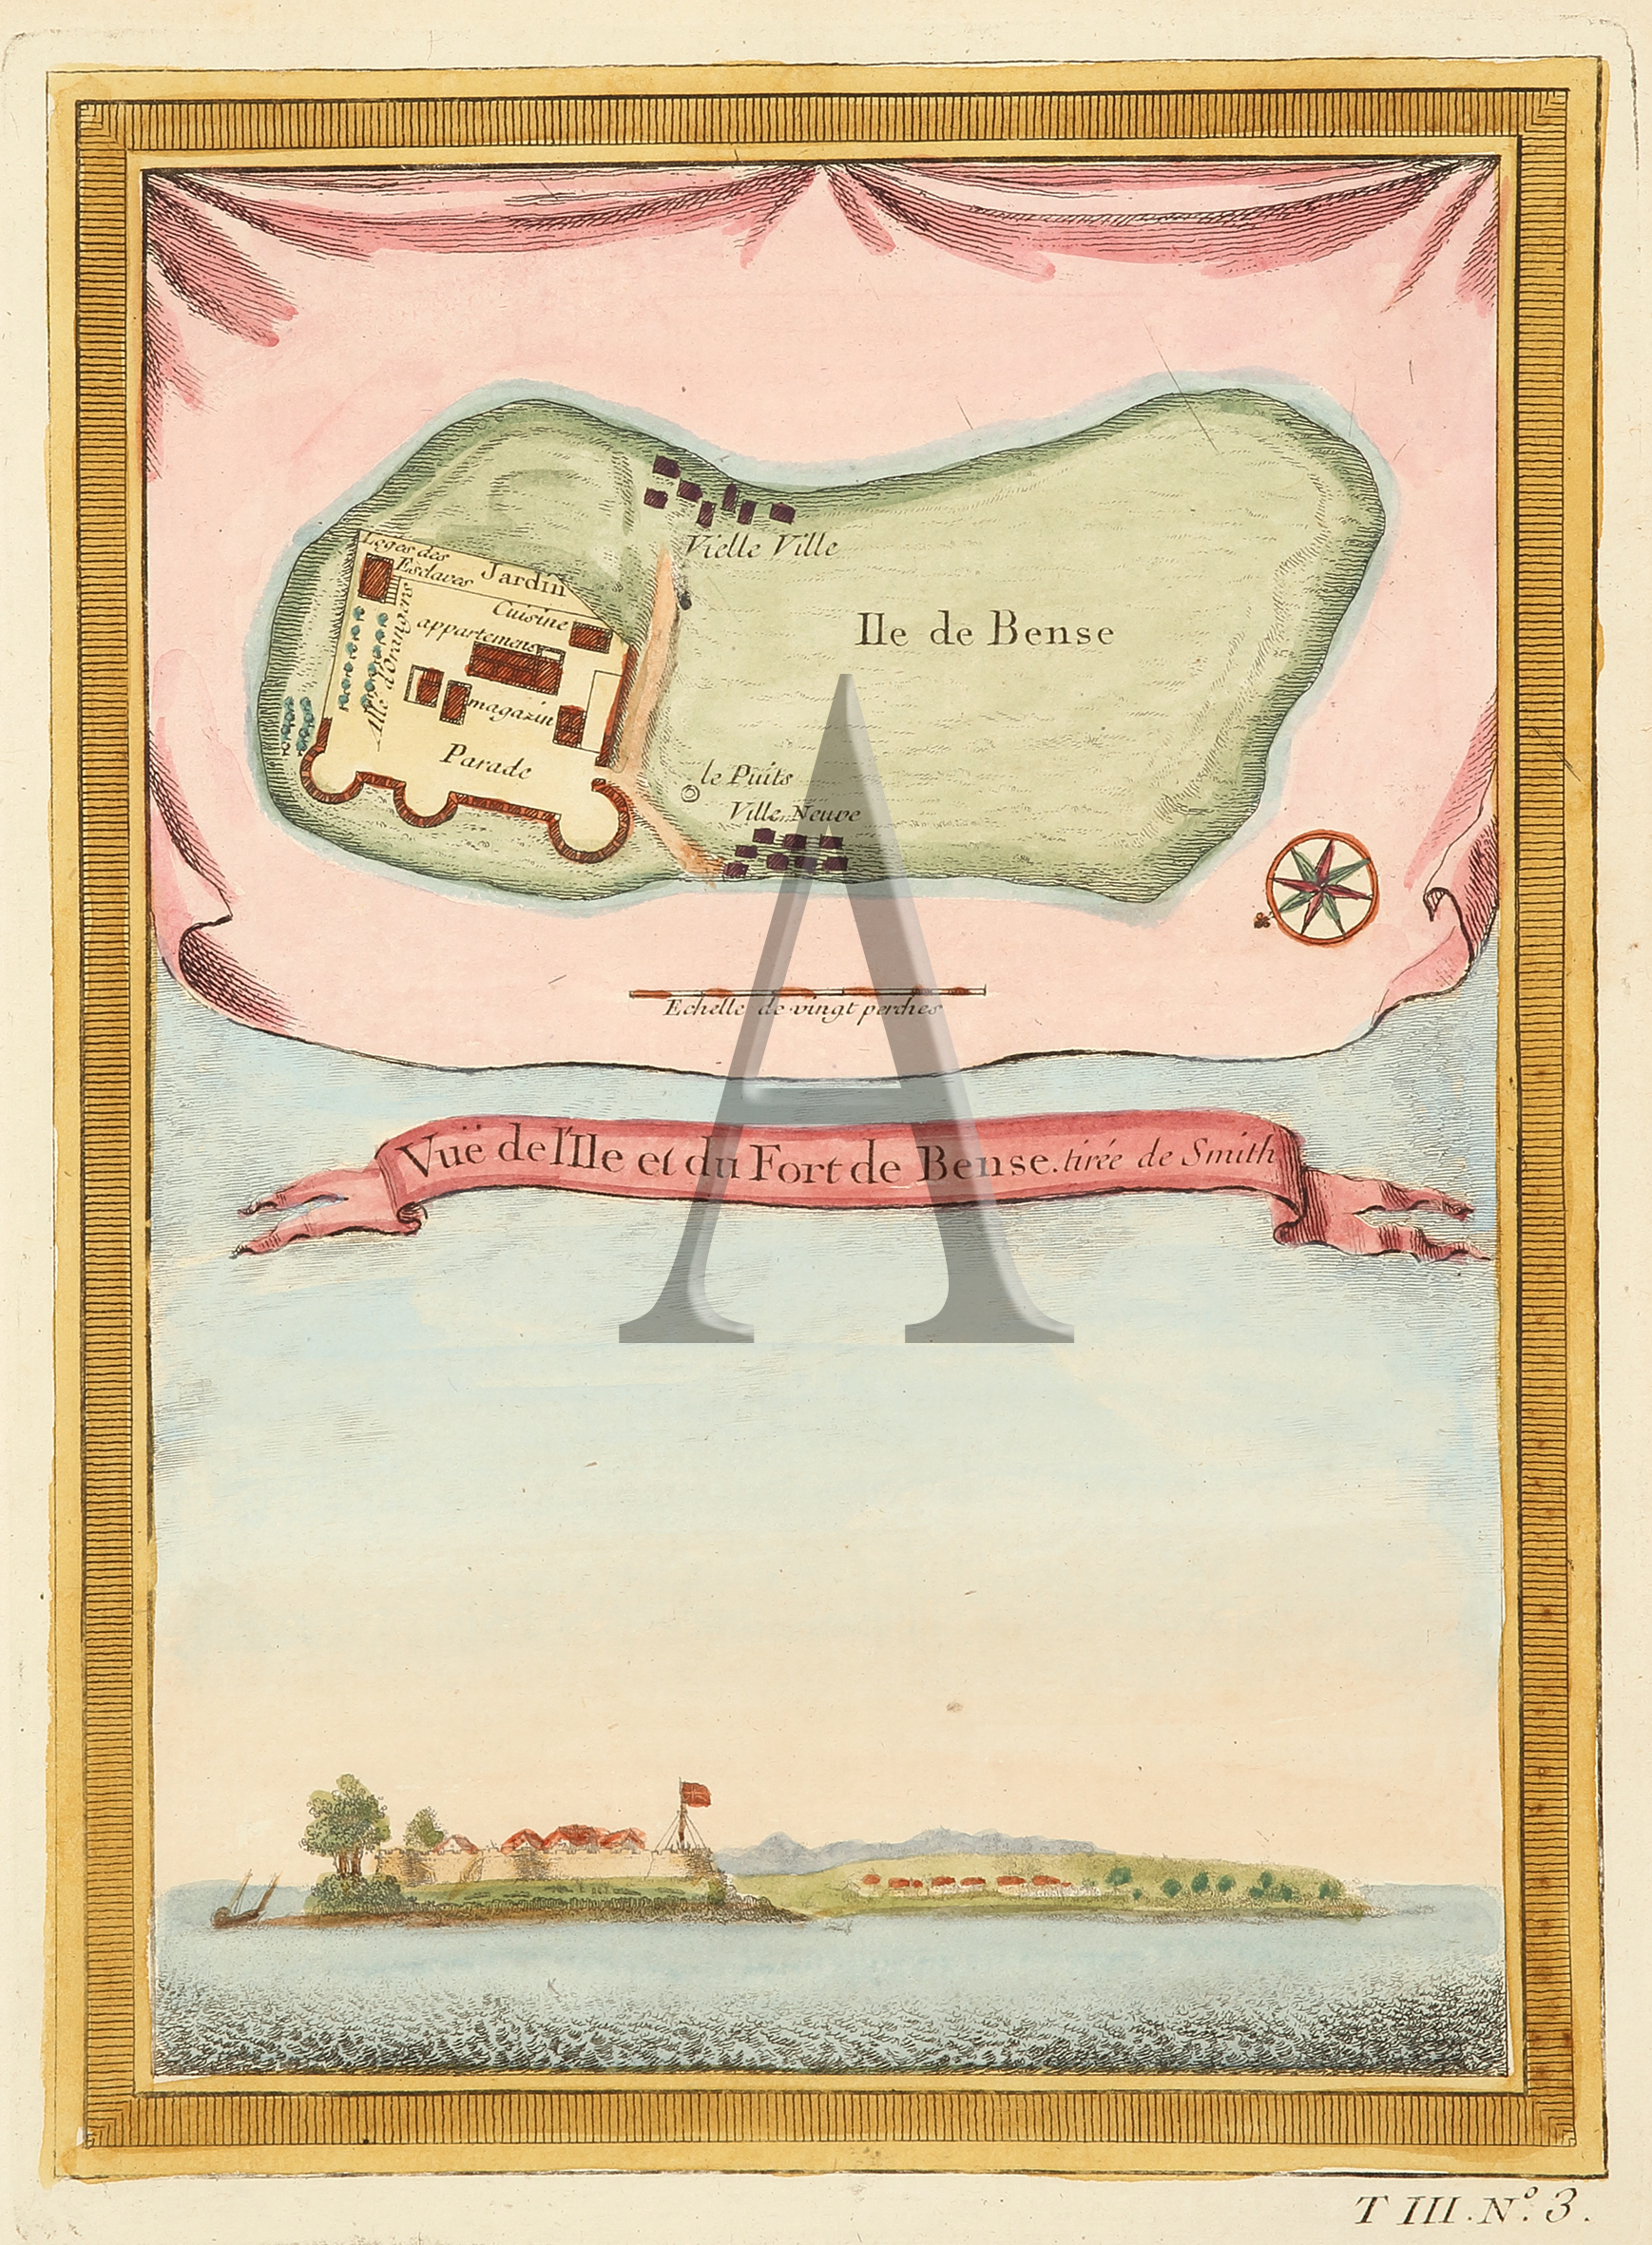 Vue de I'ile et du Fort de Bense. - Antique Print from 1764